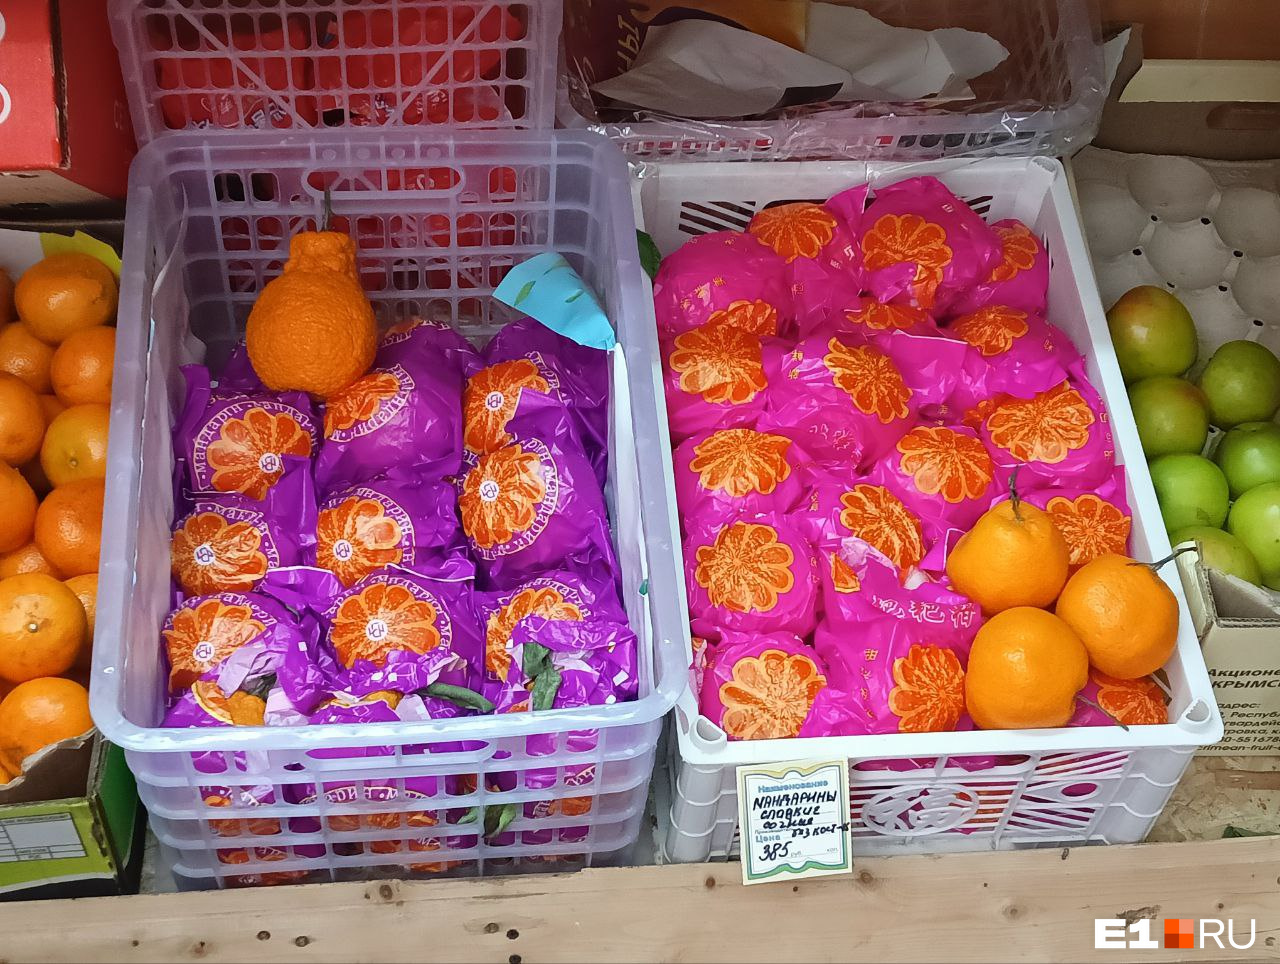 Раскрыт секрет загадочных мандаринов, которые заметили в магазинах Екатеринбурга